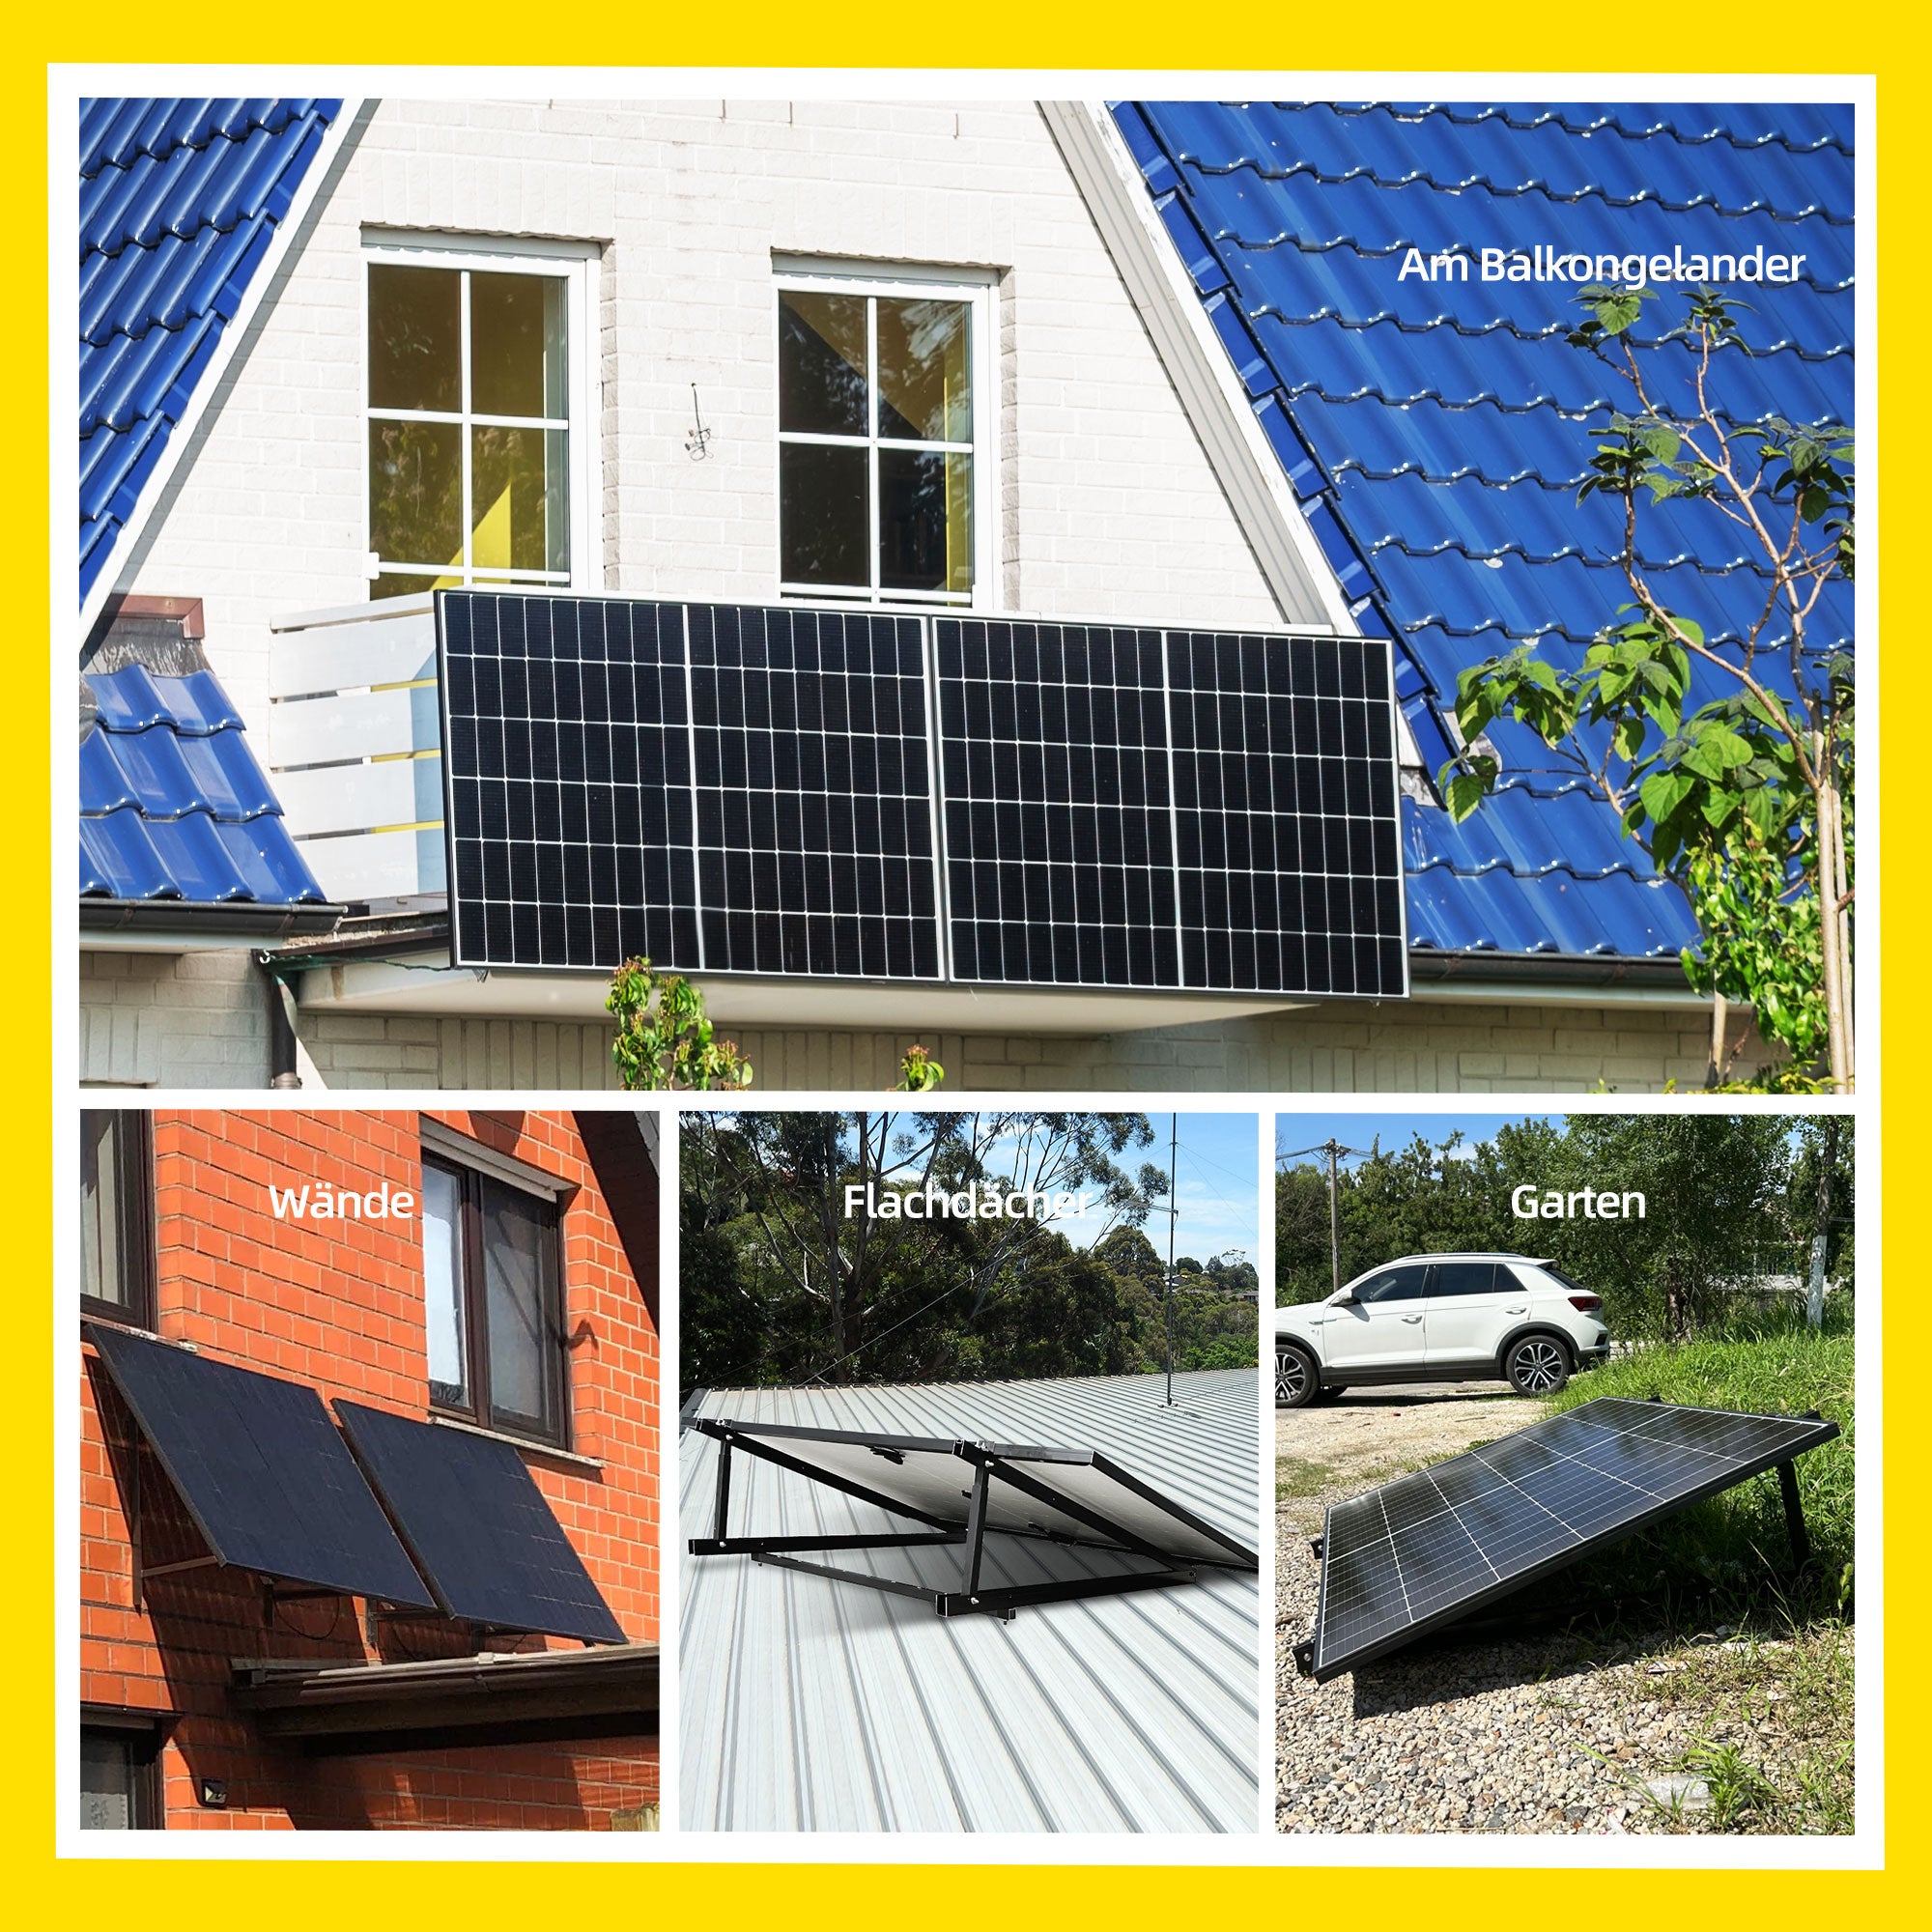 ALLDREI Balkonkraftwerk Halterung Solarmodul Halterung 1300mm, Verstellbar Winkel 10-30°, für Balkone, Garten, Flachdächer und Wände, für die meisten Solarmodule